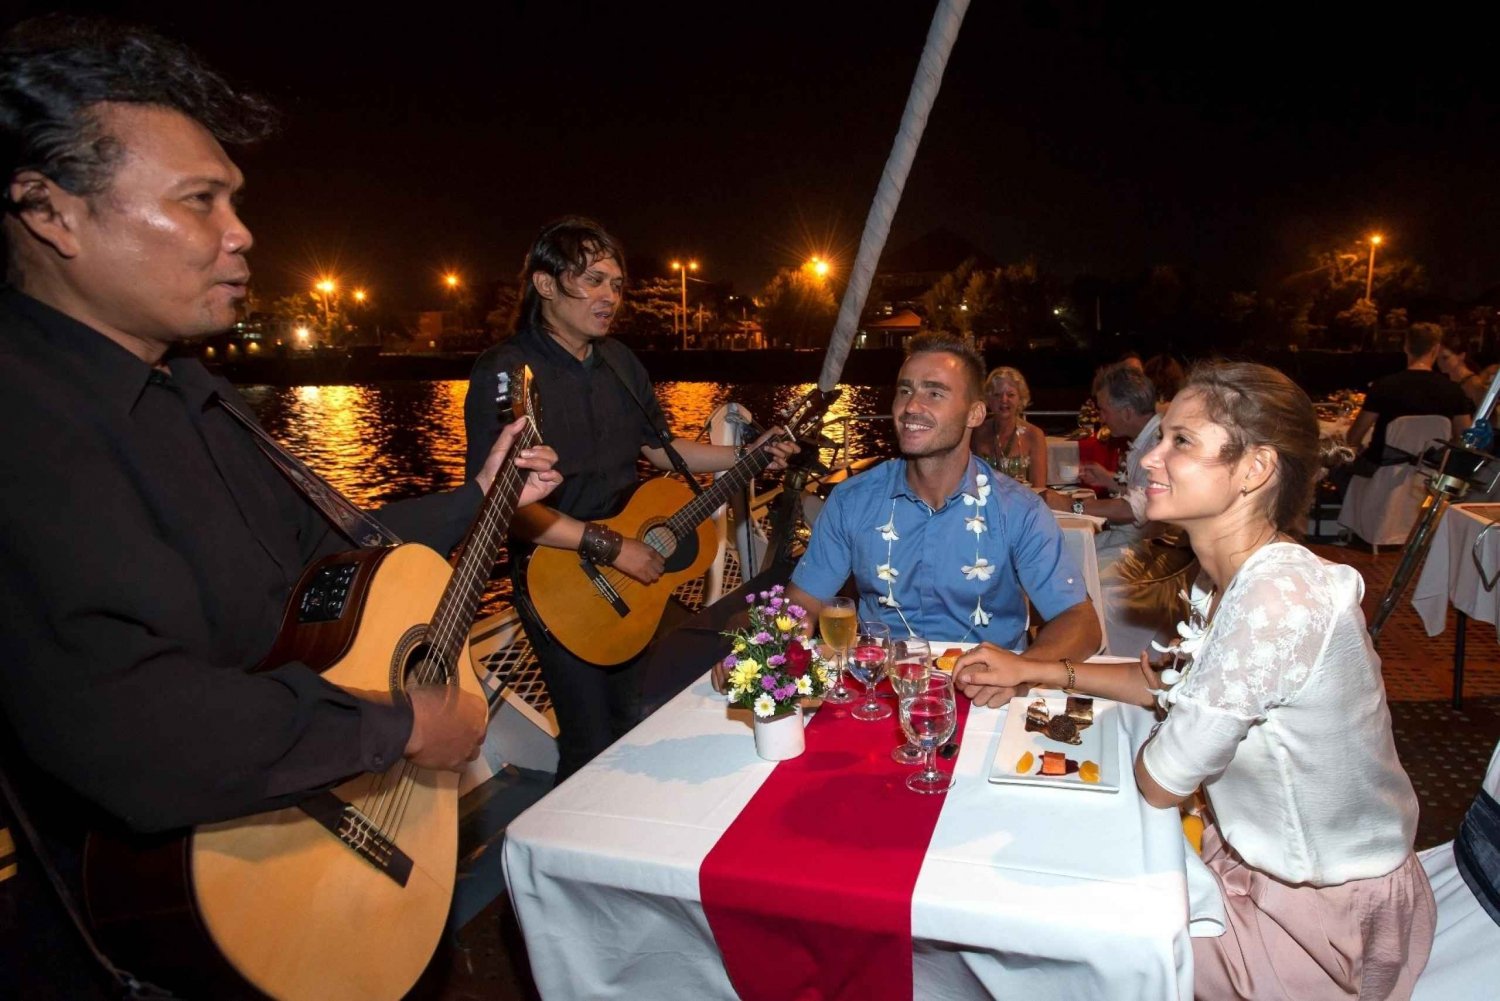 Bali Benoa: crociera romantica con cena di 5 portate con musica dal vivo